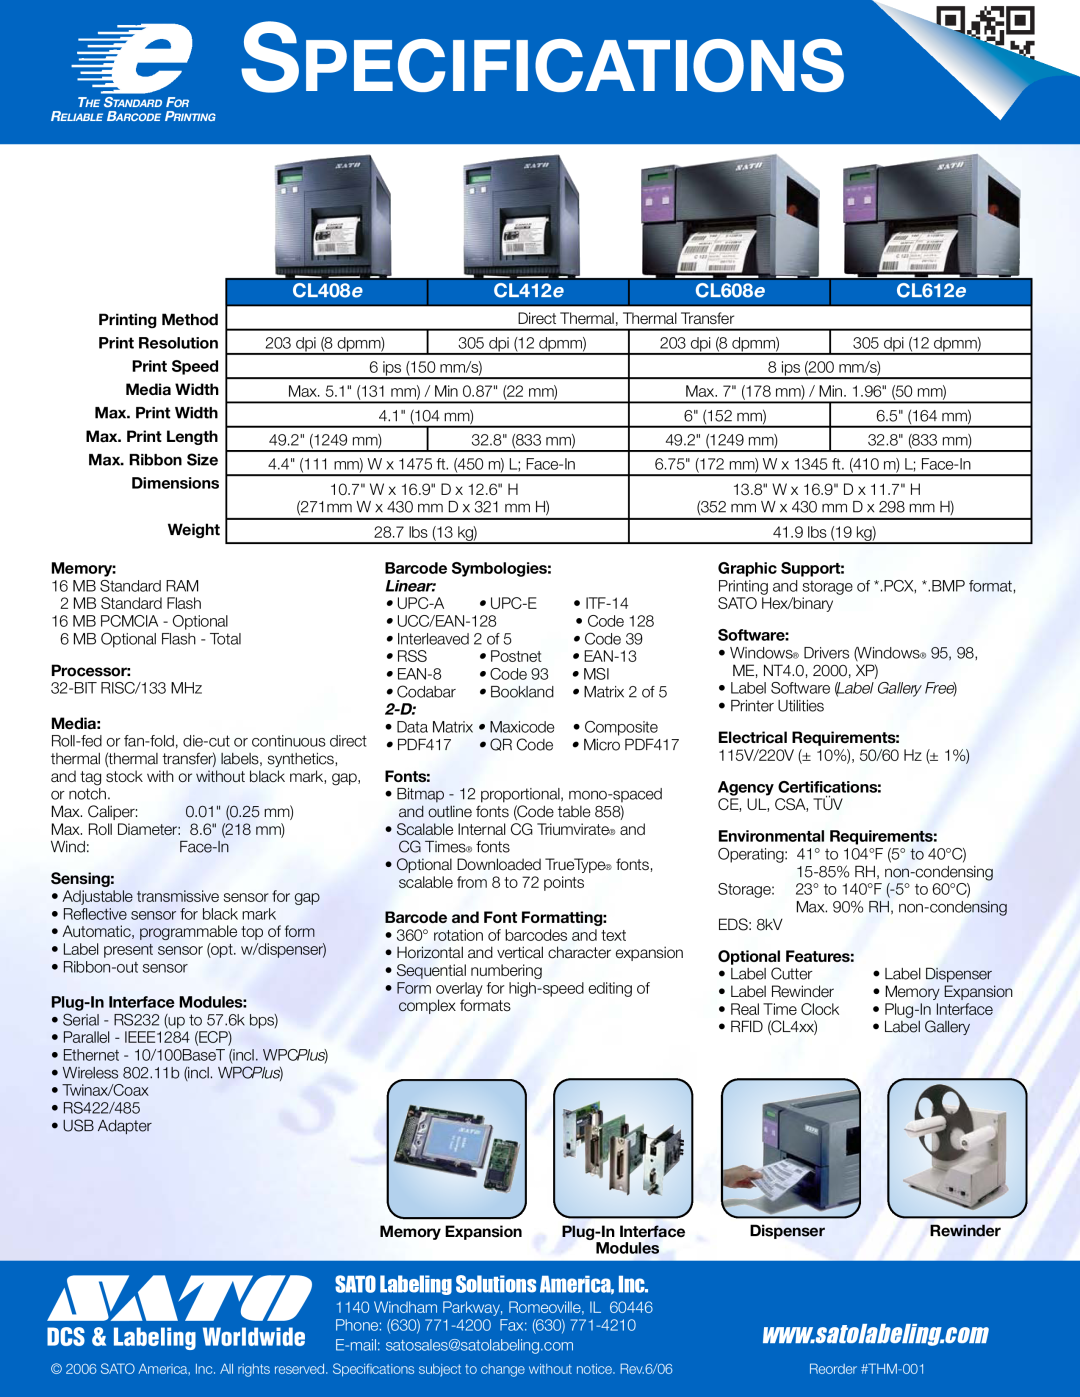 SATO CLe Series manual Specifications, SATO Labeling Solutions America, Inc, CL408 e, CL412 e, CL608 e, CL612 e, Linear 